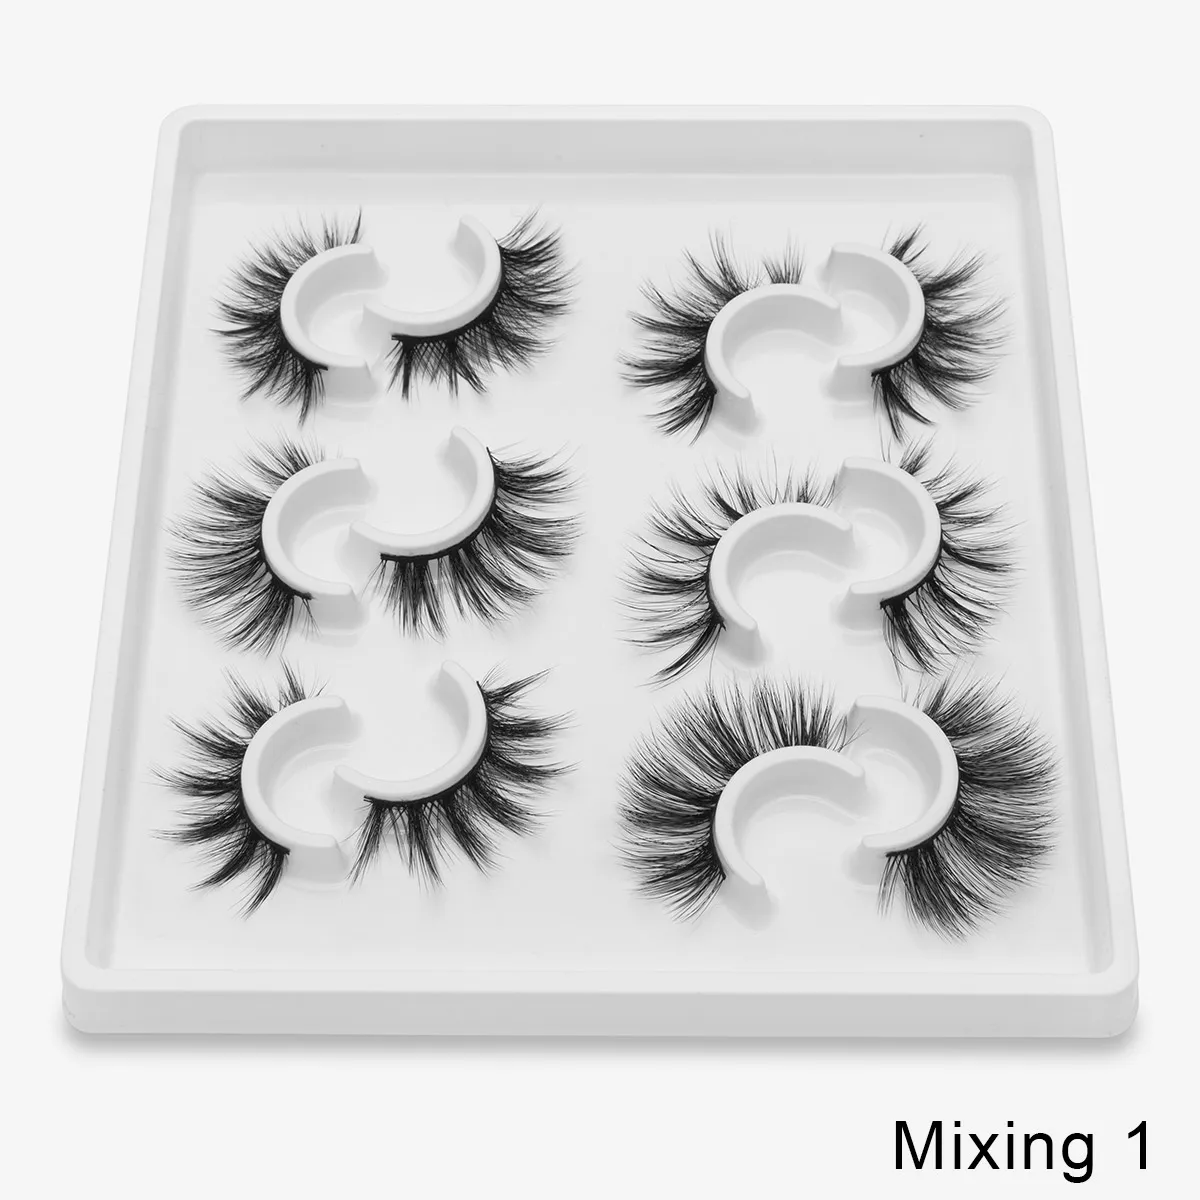 SEXYSHEEP 6 пар 3D норковые ресницы натуральные накладные ресницы драматический объем поддельные ресницы макияж ресницы для наращивания шелковые ресницы - Цвет: Mixing1